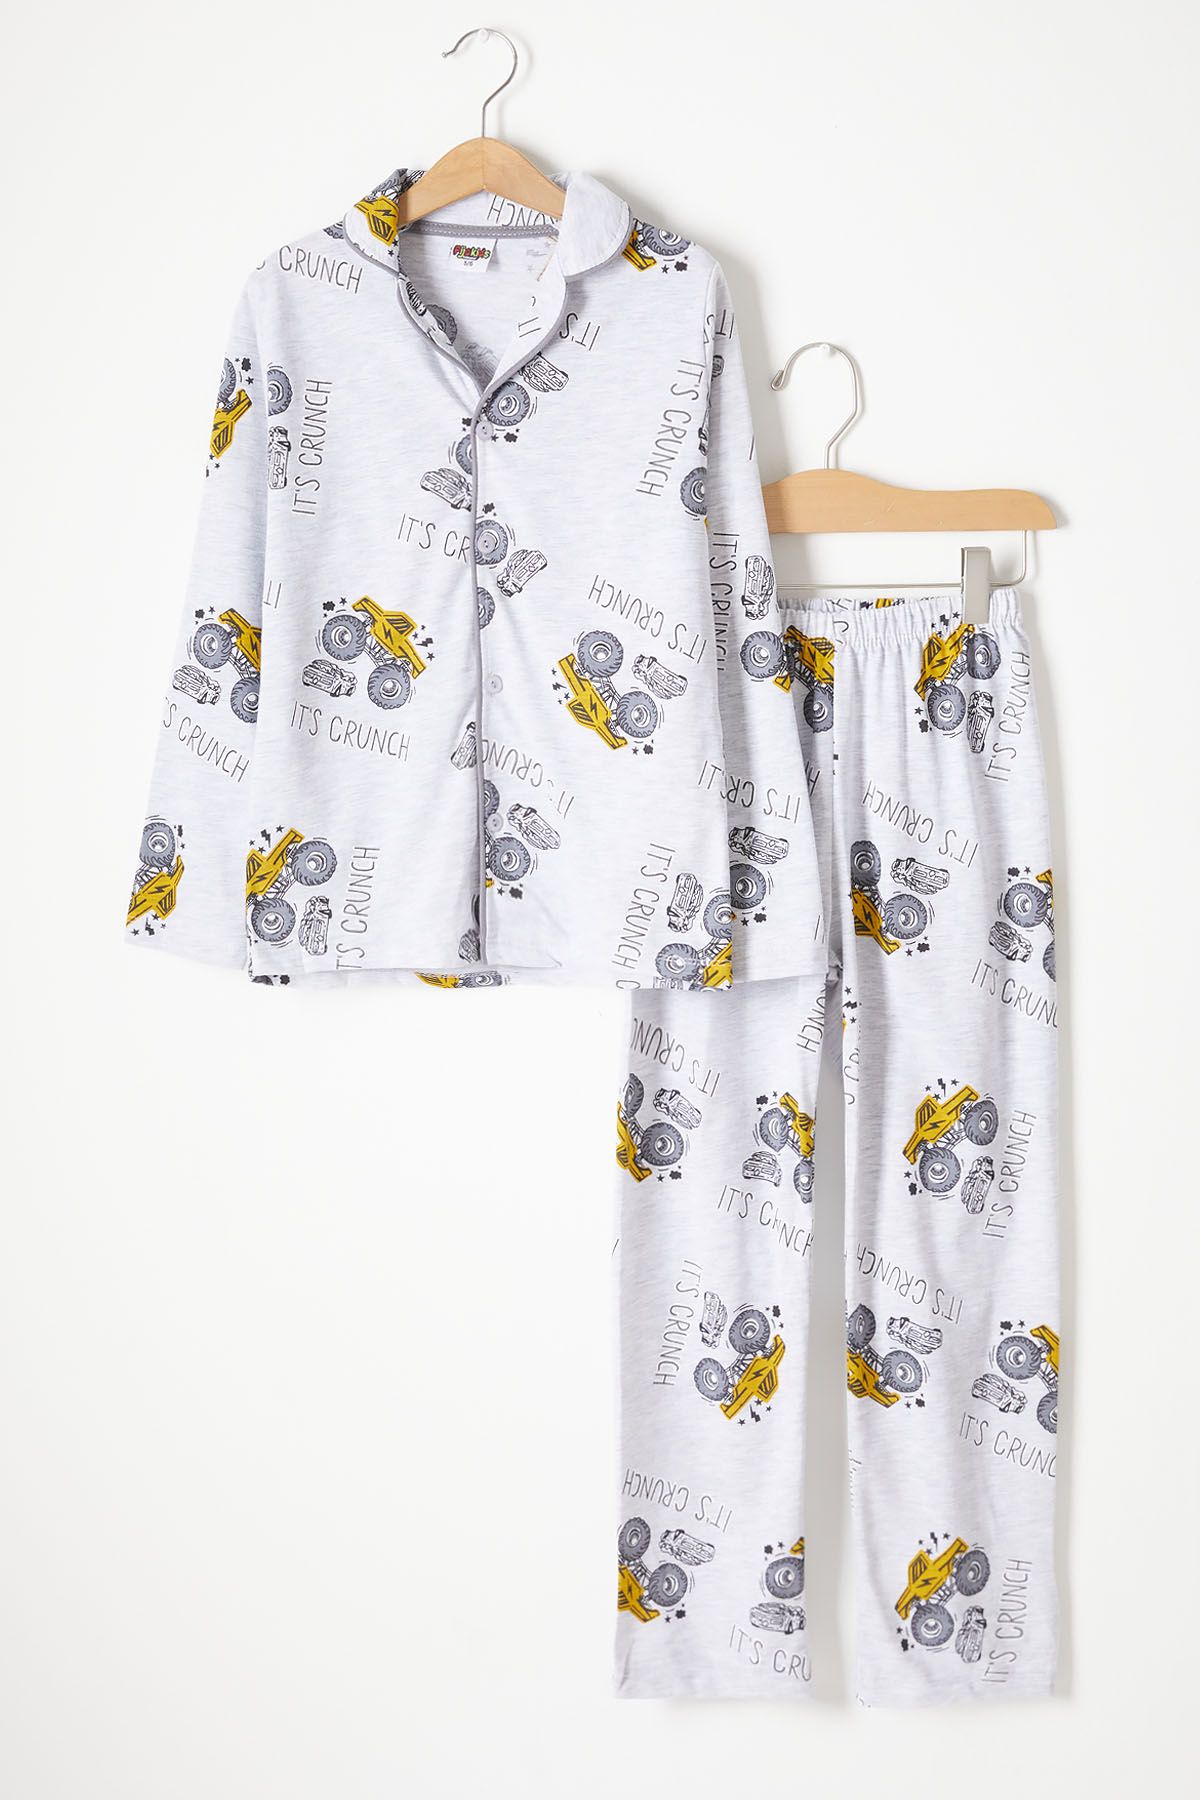 Cansın Mini Canavar Kamyon Baskılı Erkek Çocuk Pijama Takımı 16331